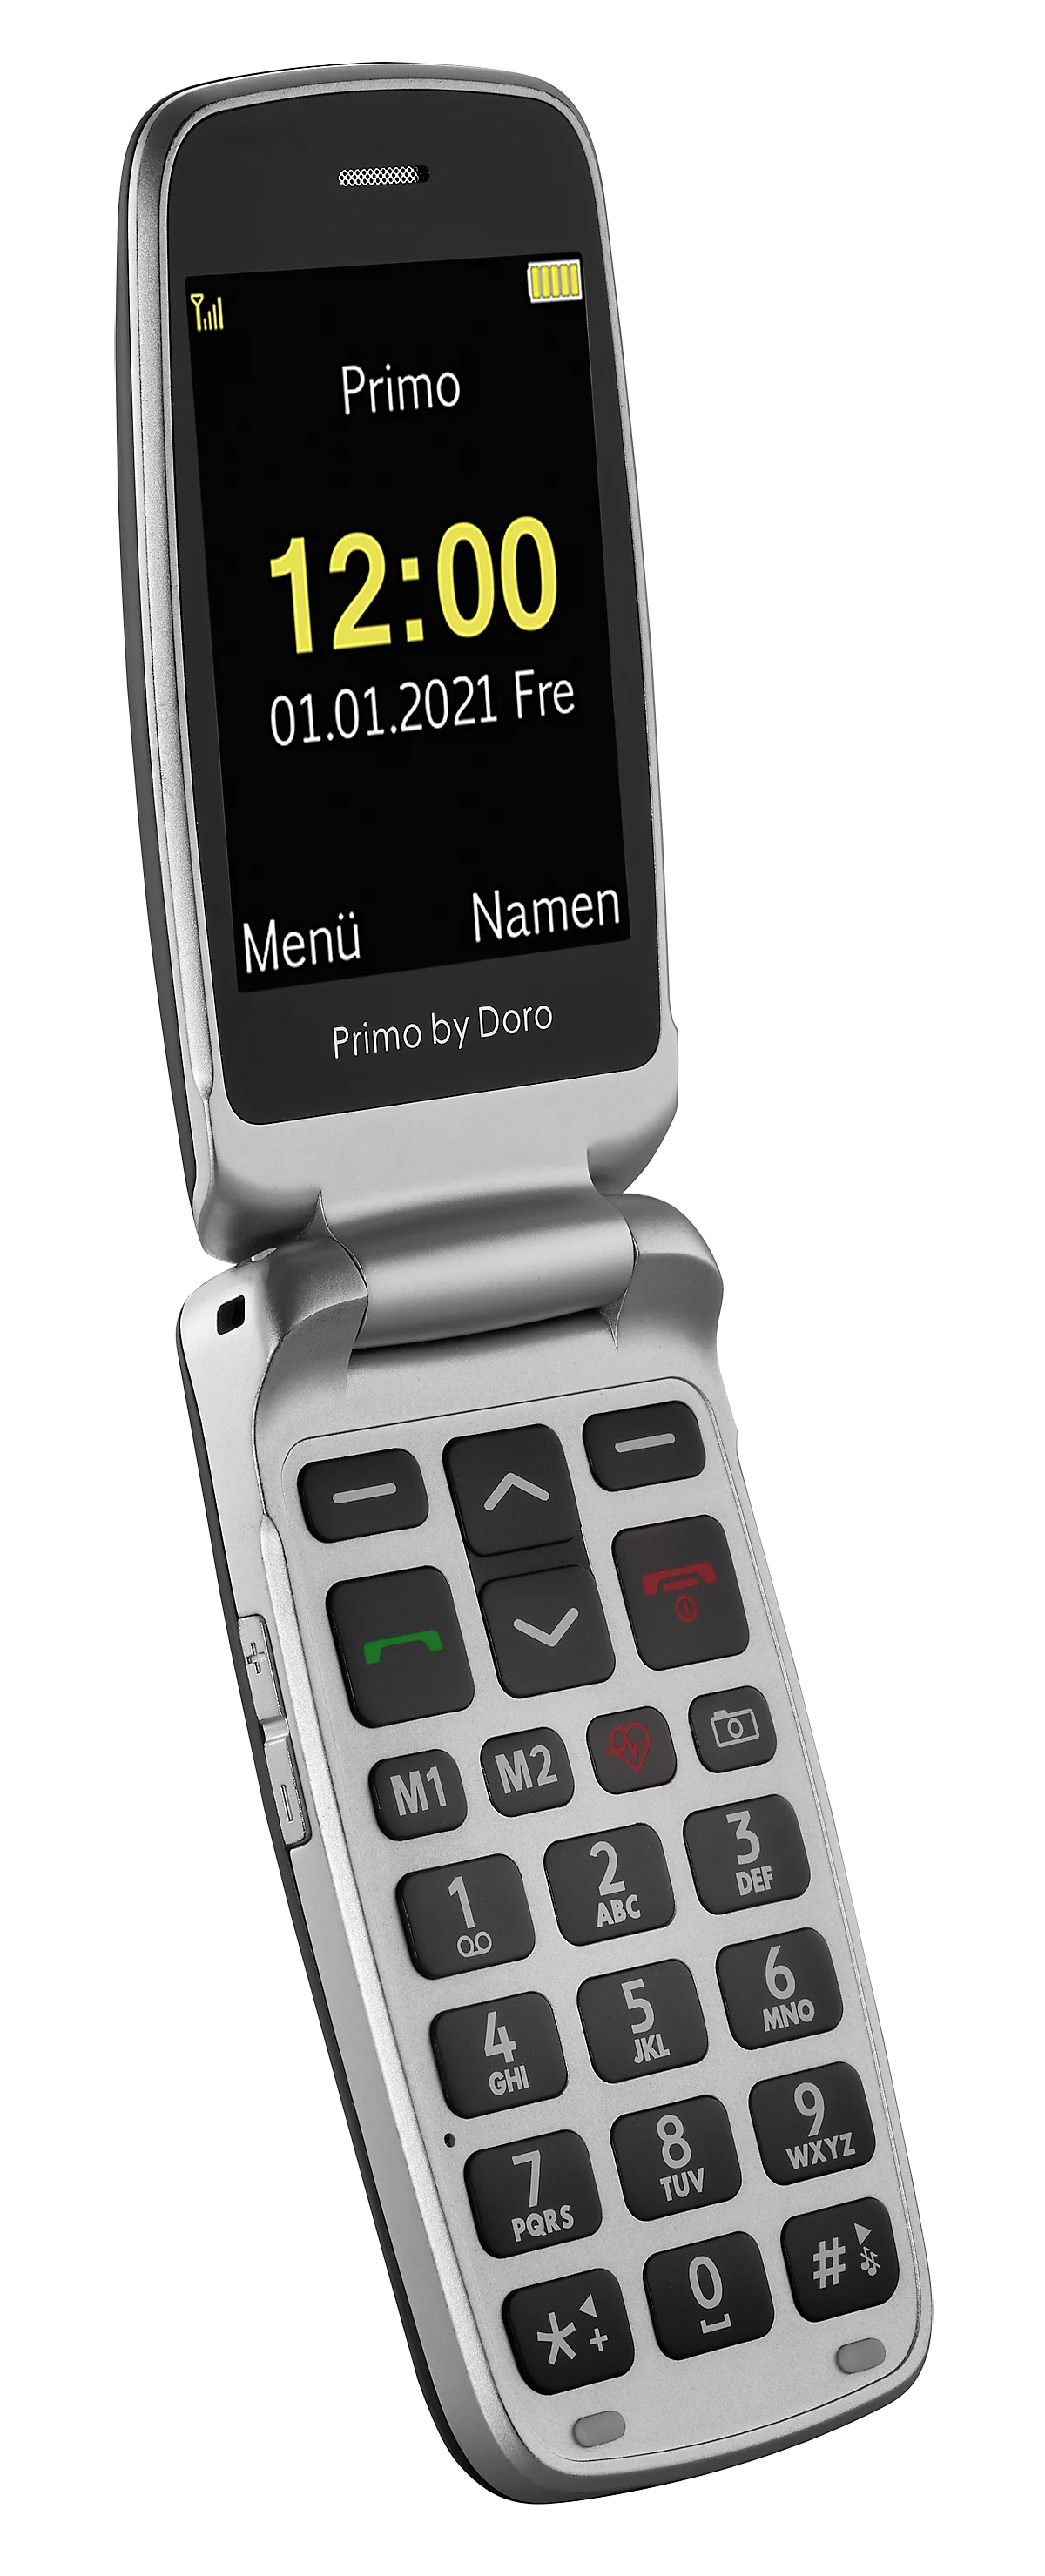 kaufen Primo™ Schäfer 418 by günstig WiFi/GPS/Bluetooth, Ortungsfunktion, Ladestation mit Außen SOS-Taste, Innen- | Shop & Seniorenhandy Kardiomessung, Kamera, Sturzsensor, Doro,